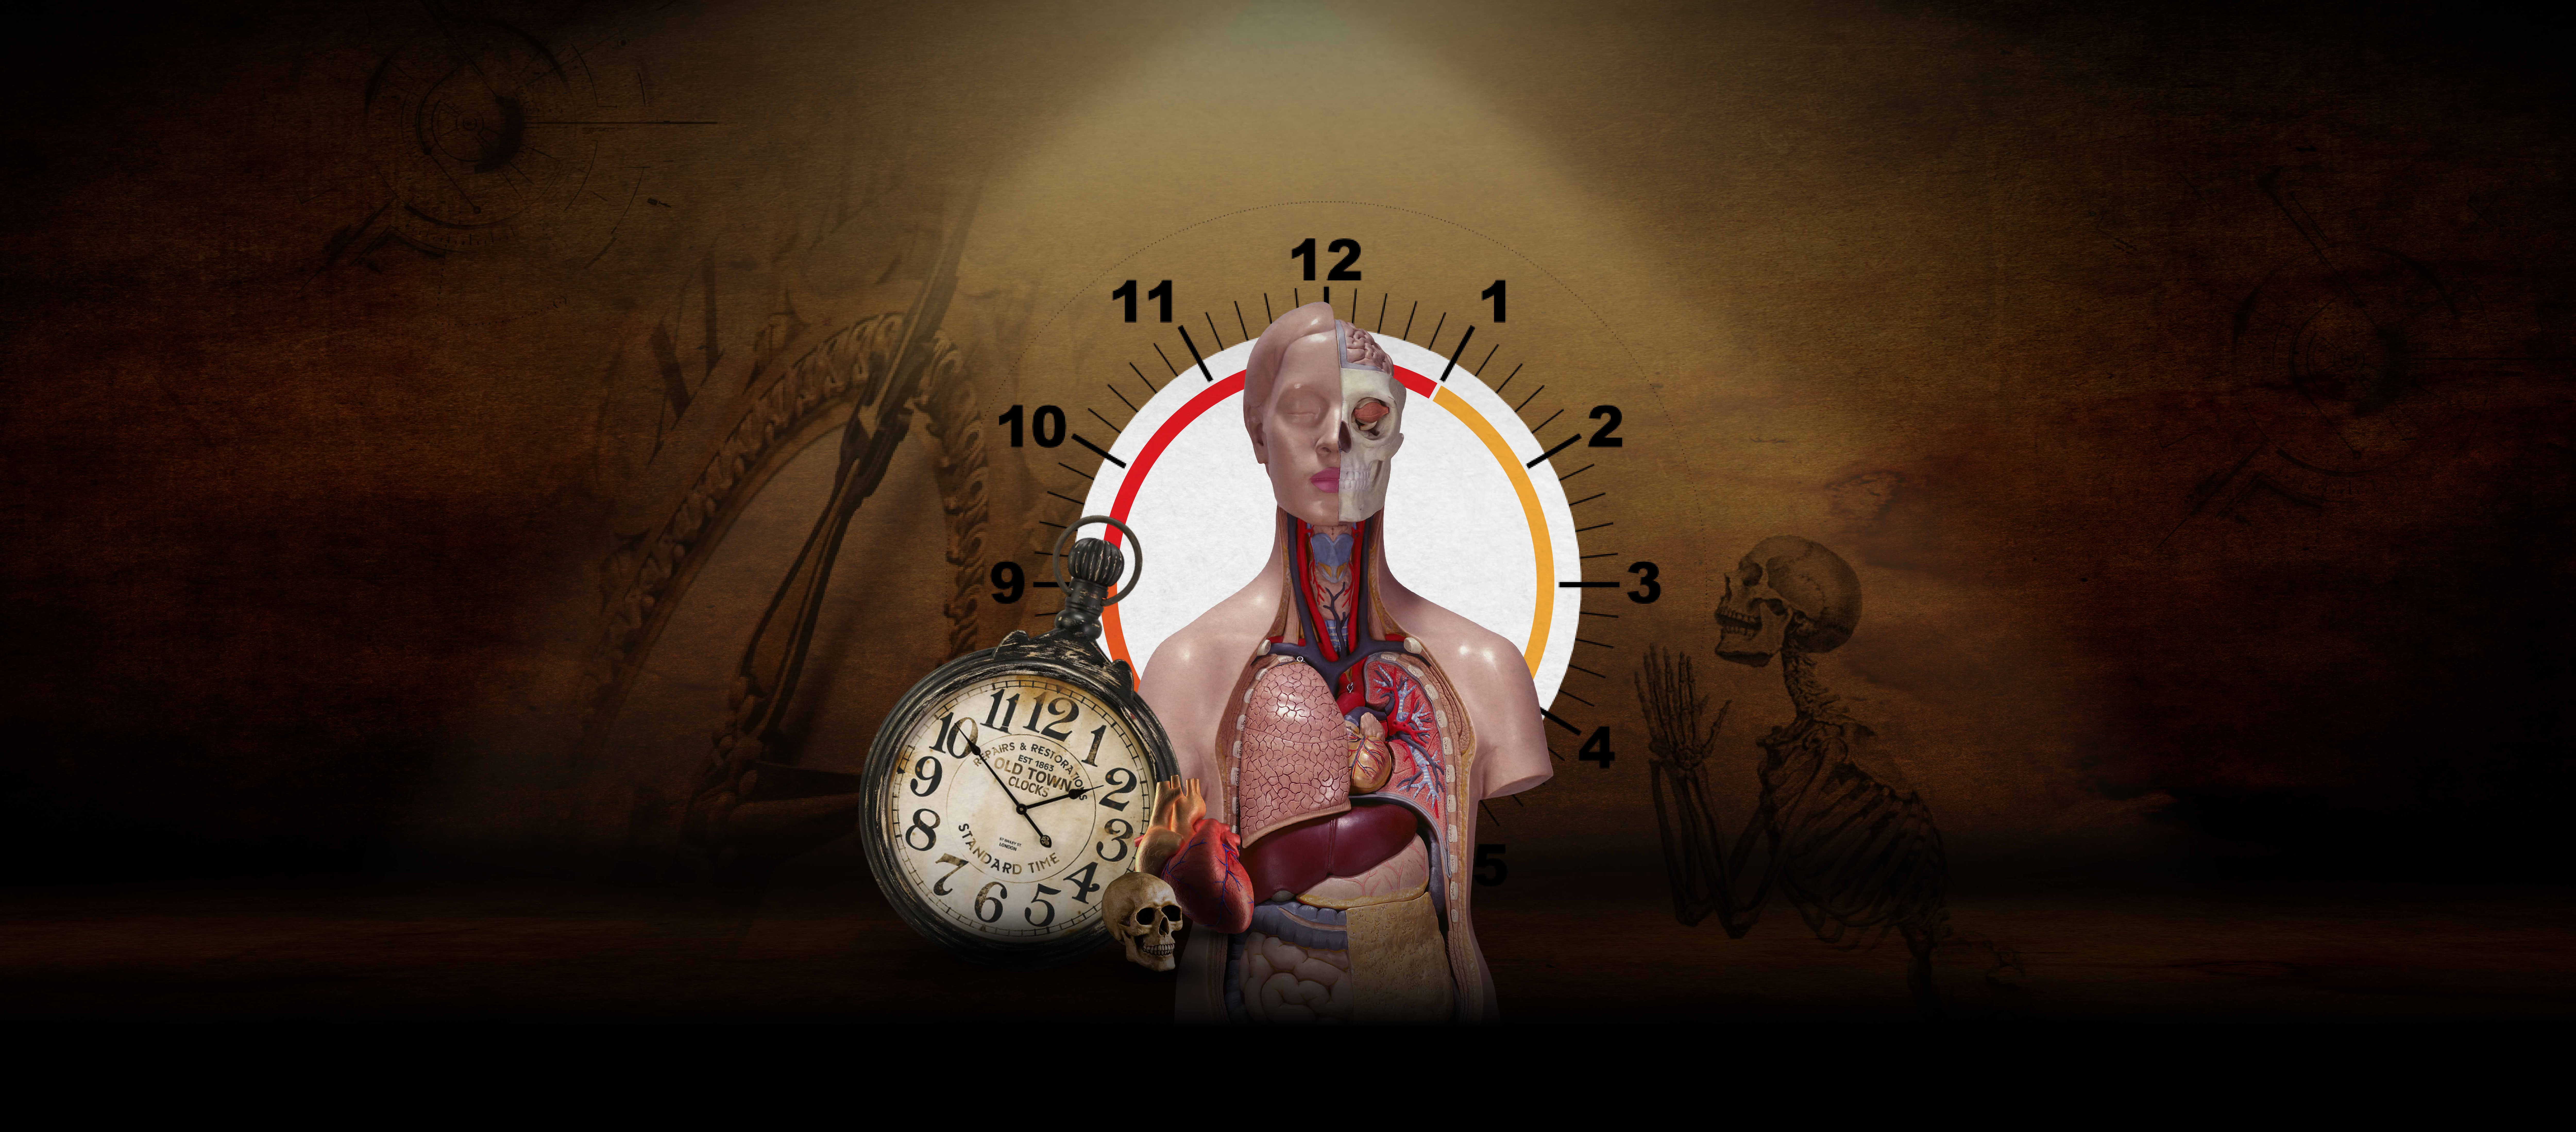 วิทยาศาสตร์แห่งความตาย นาฬิกาชีวิตช่วงนาทีสุดท้ายก่อนร่างกายดับสูญ